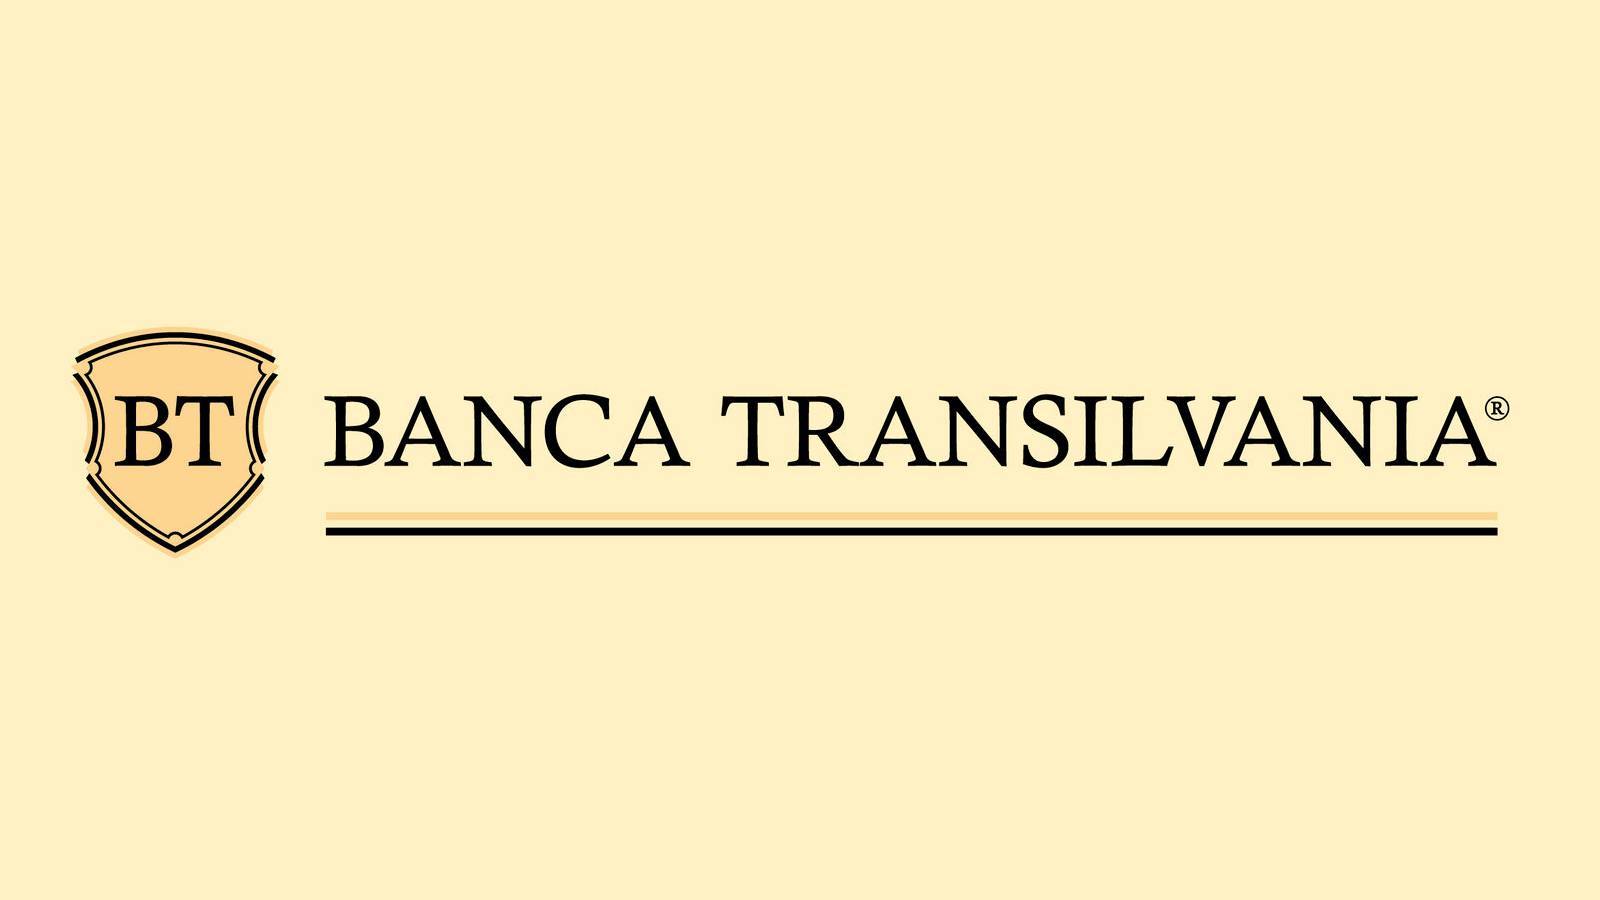 BESLUIT BANCA Transilvania ALERT verzonden naar Roemeense klanten